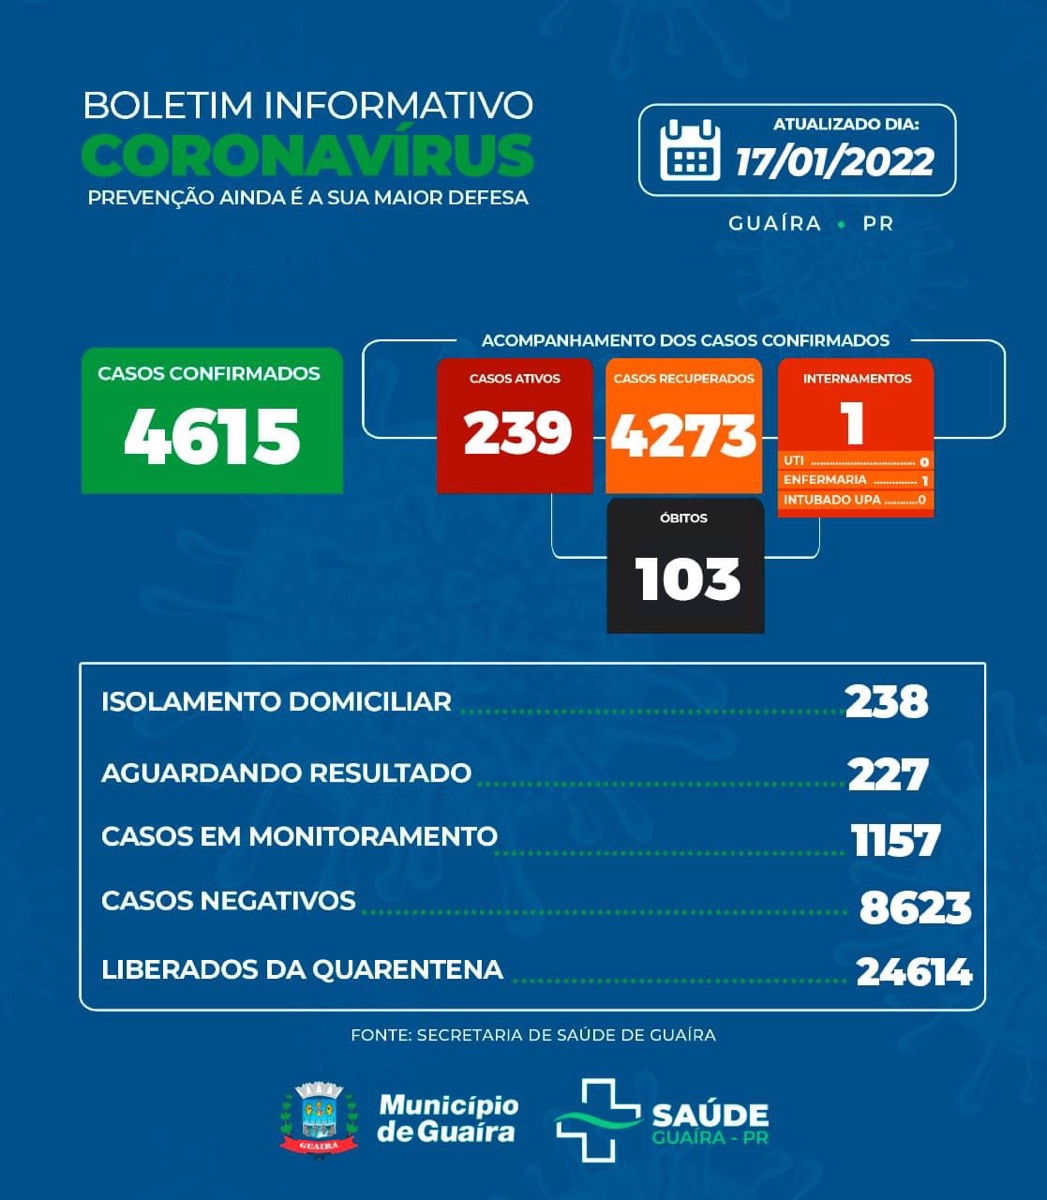 Guaíra - Covid-19: Saúde informa 239 casos ativos e 4273 recuperados • Portal Guaíra